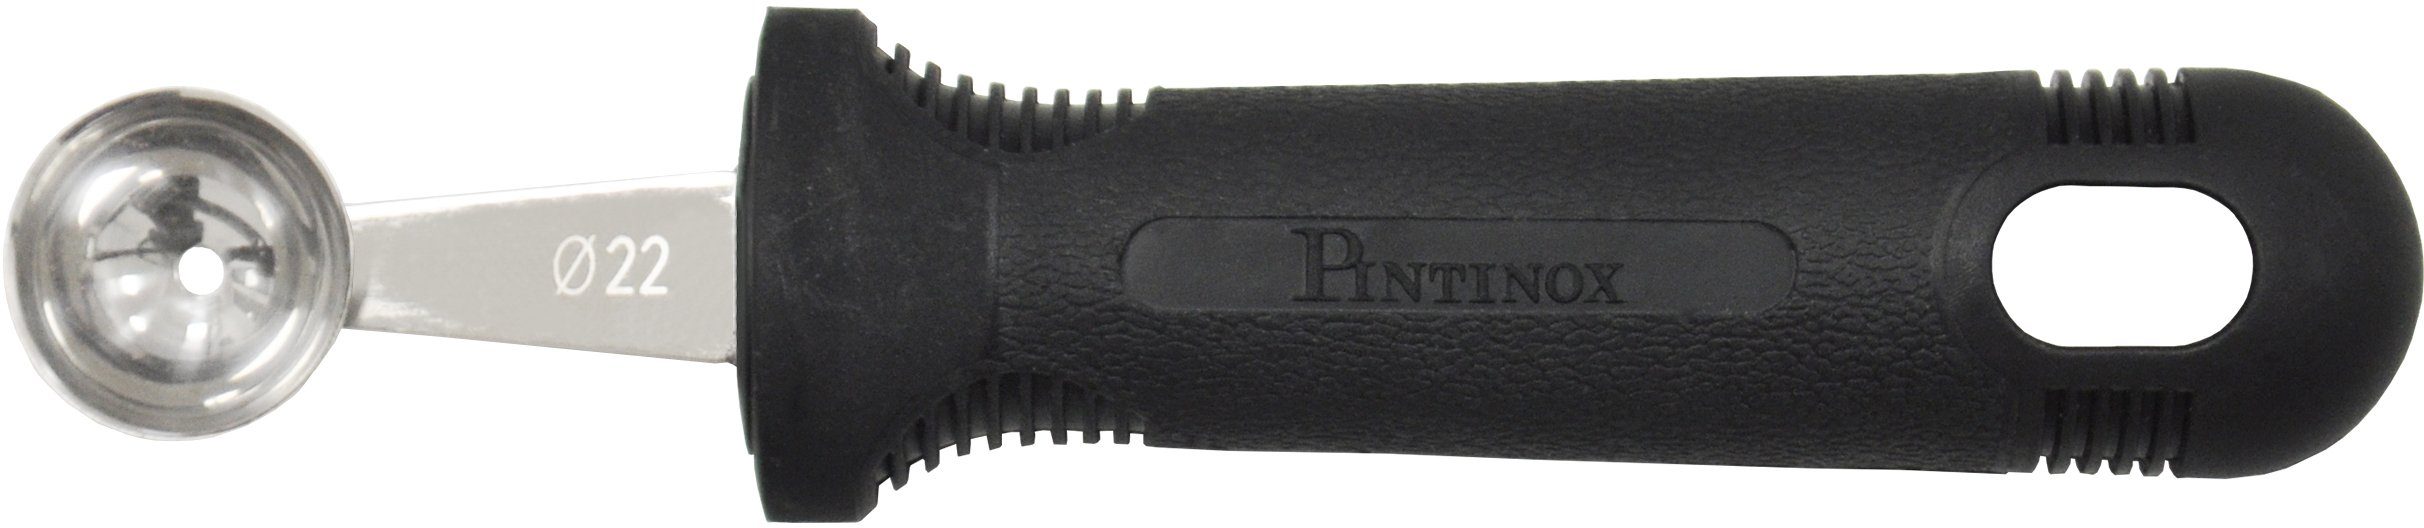 Melonenausstecher, 30mm Kugelausstecher Professional, und 25mm 22mm, PINTINOX